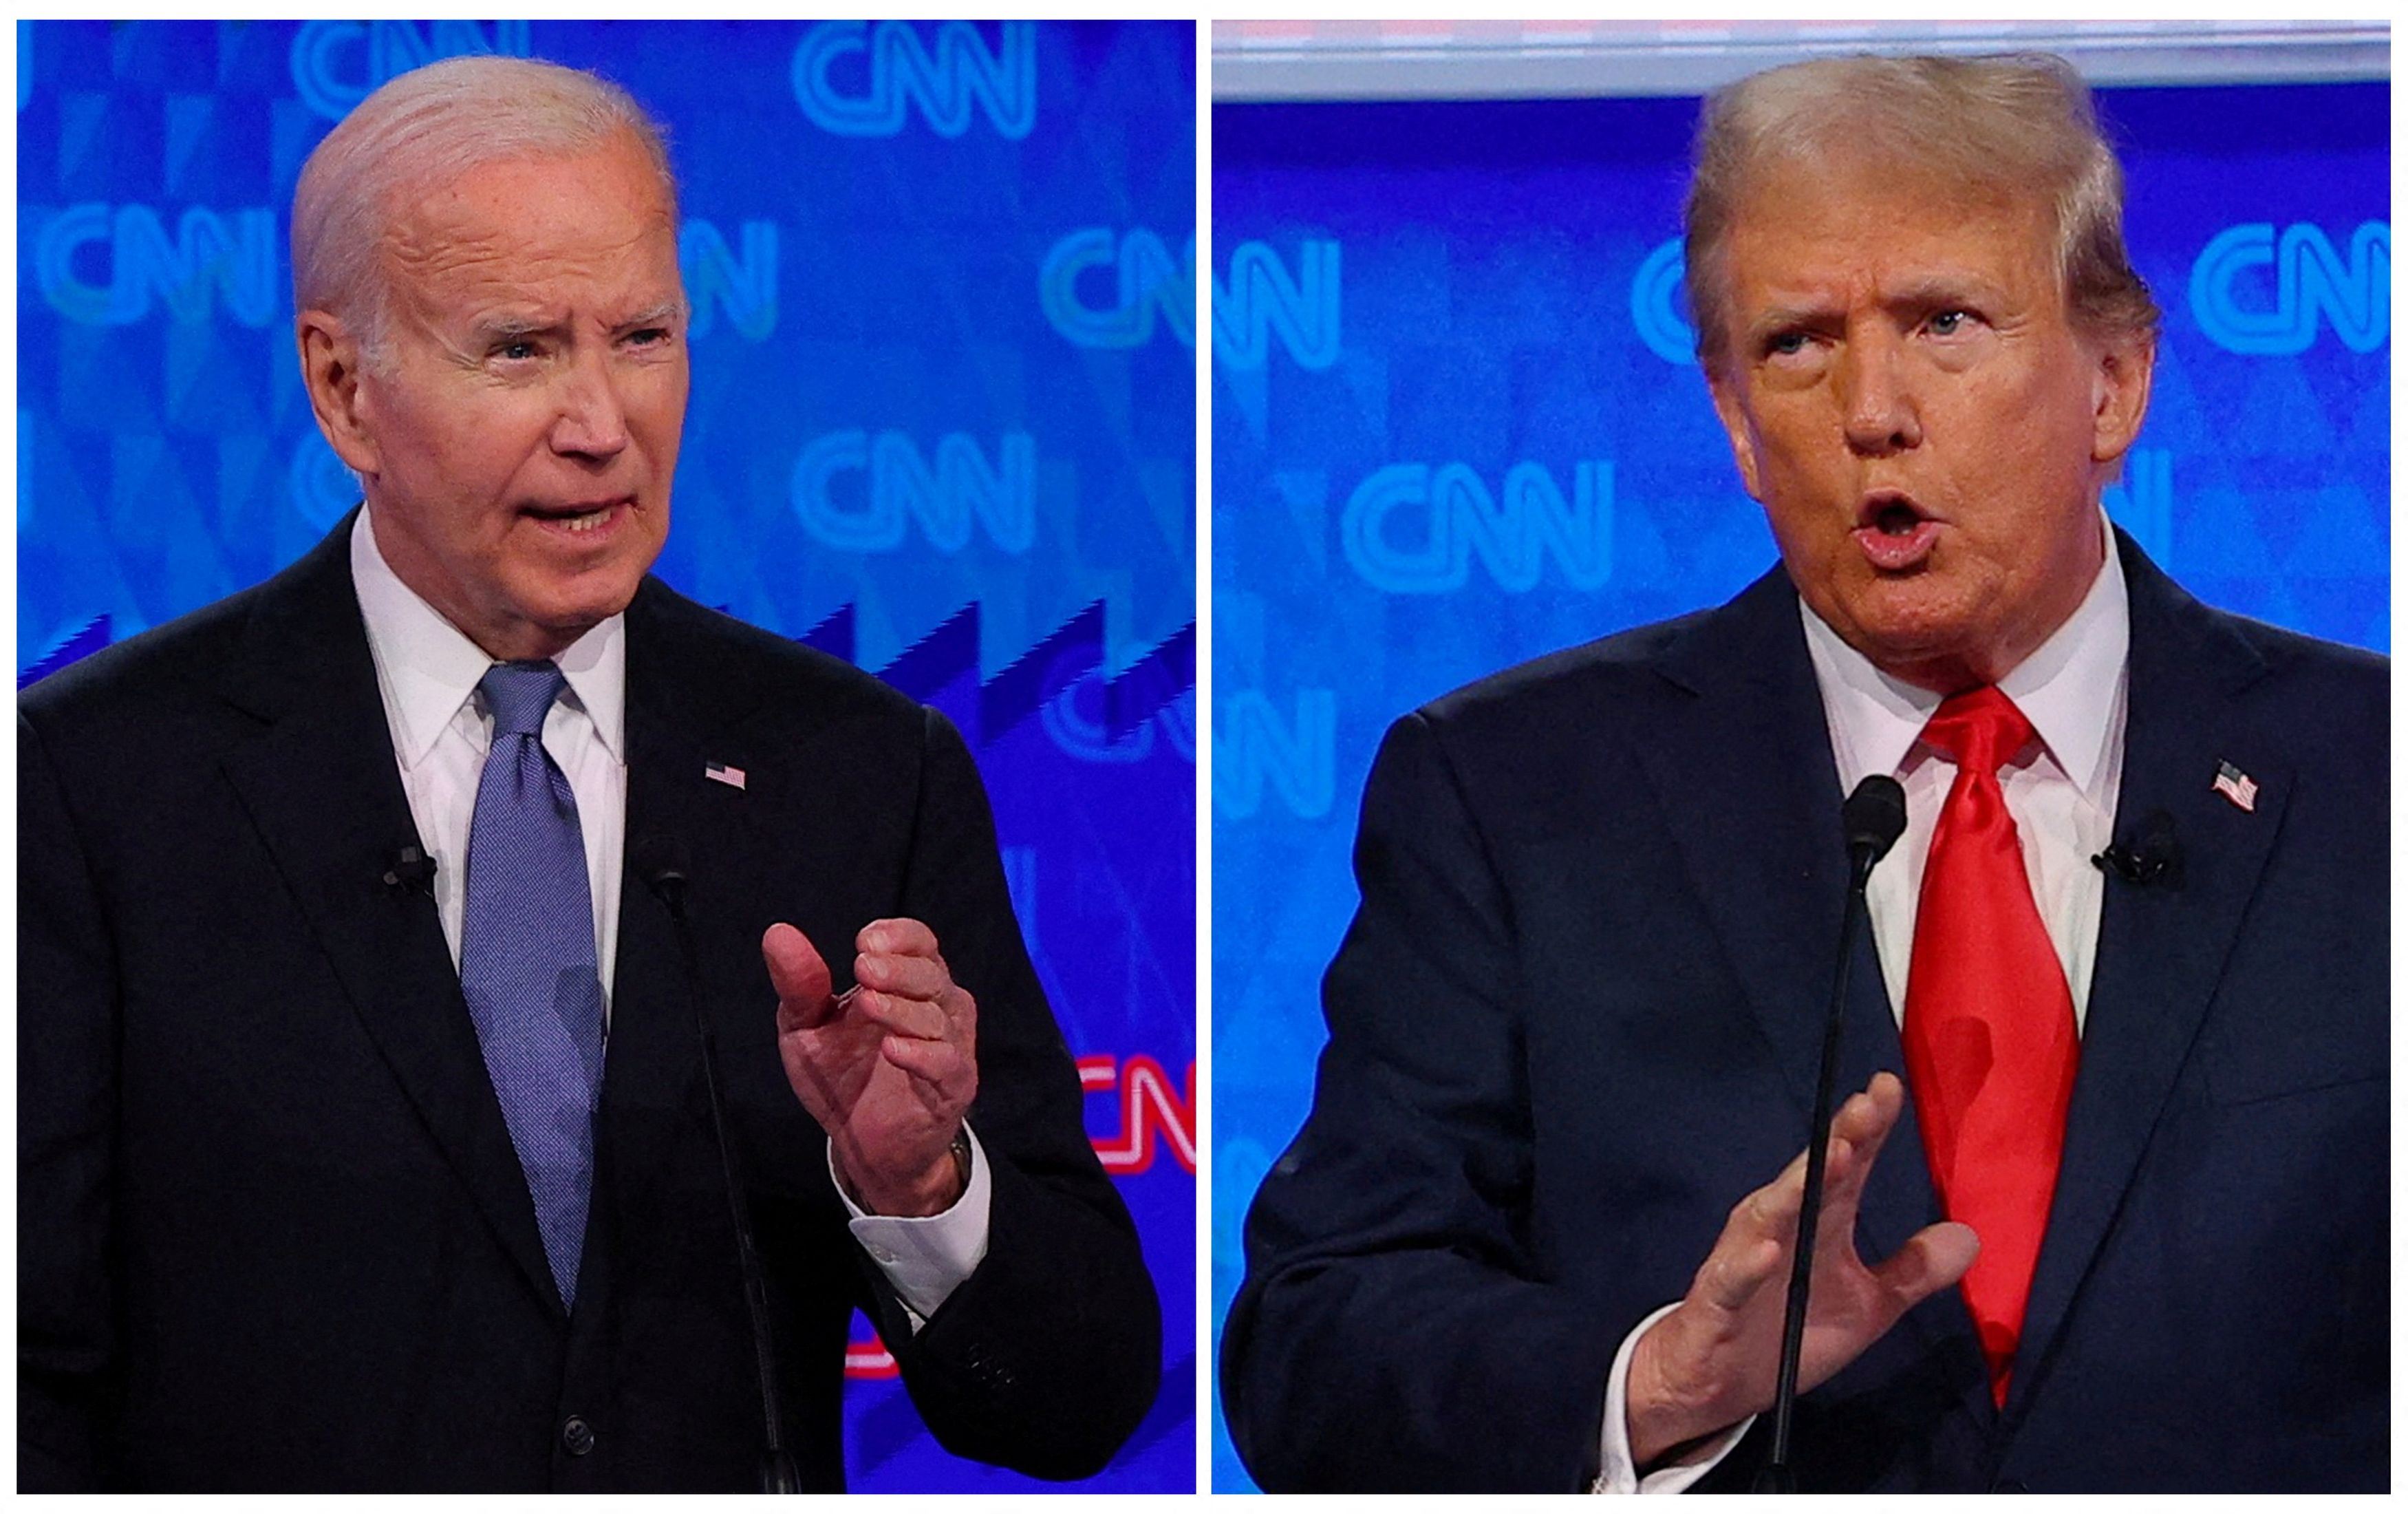 I due protagonisti del duello tv: Biden e Trump